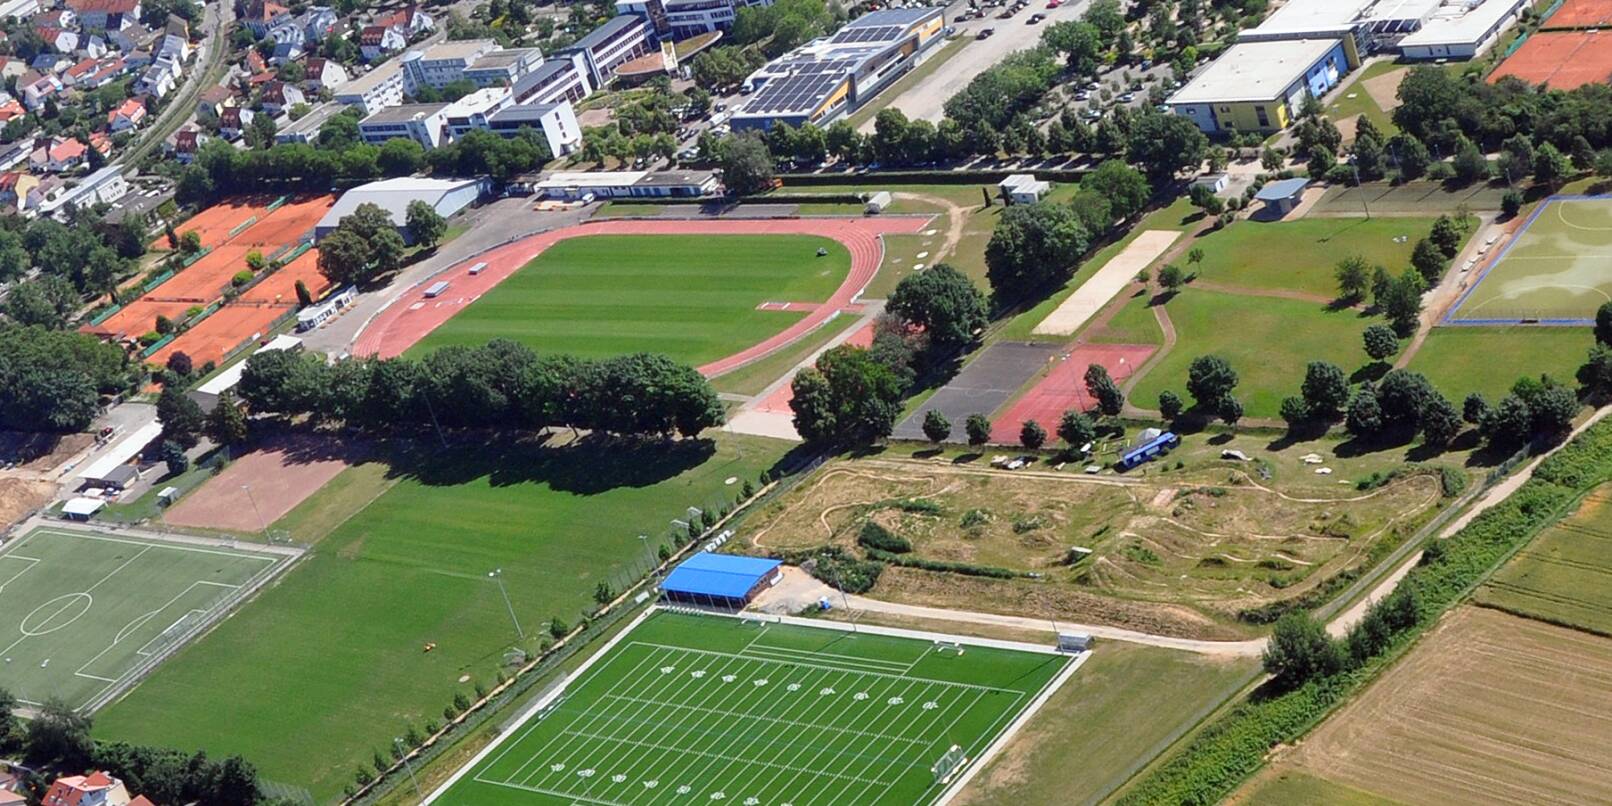 Rund um das Sepp-Herberger-Stadion und die Waidallee haben sich viele Weinheimer Sportvereine angesiedelt – darunter die beiden größten Sportvereine TSG und AC Weinheim (Archiv-Luftbild).